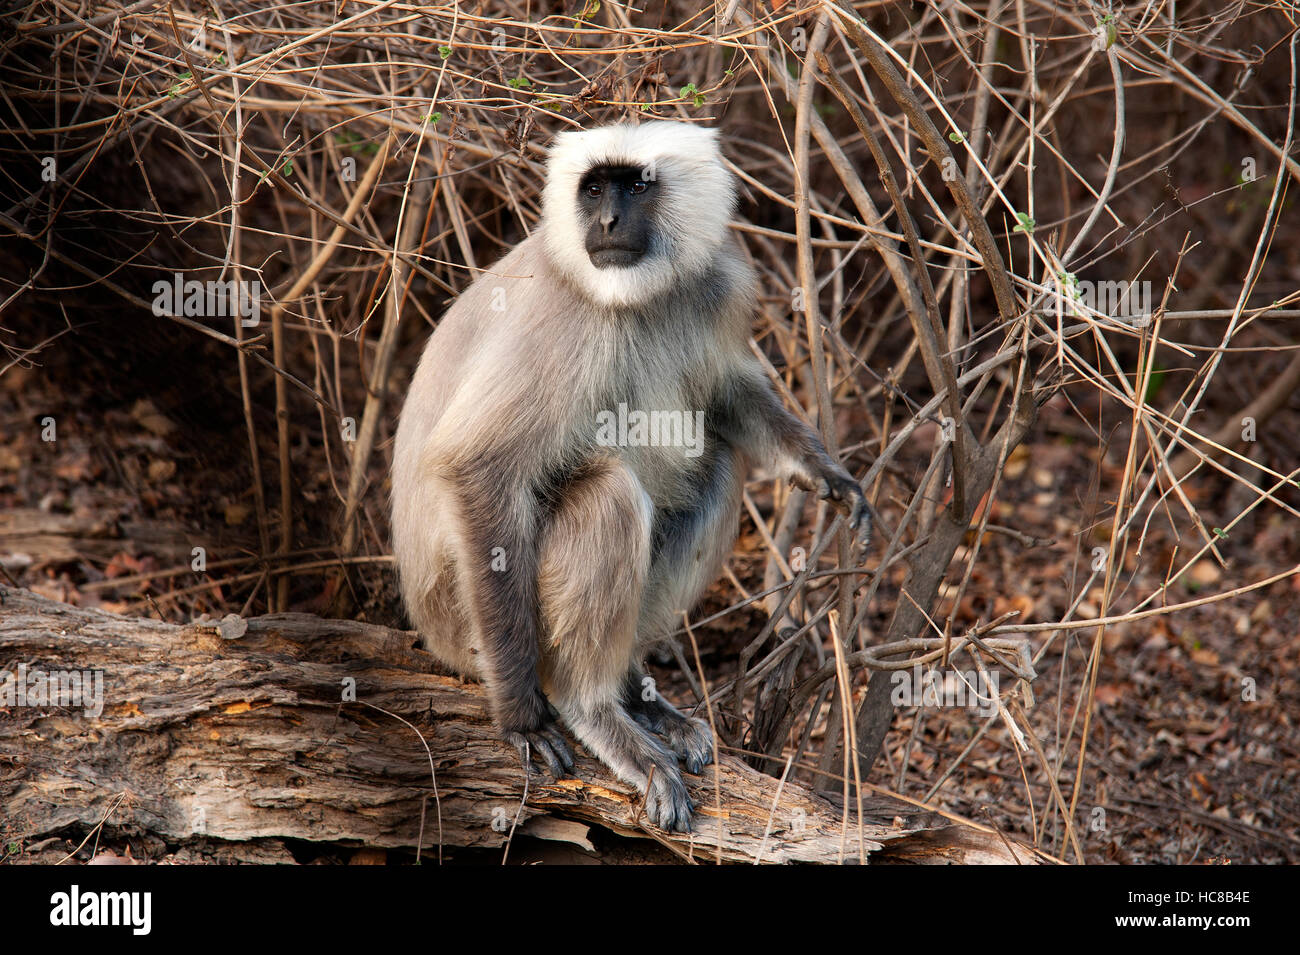 Uttarakhand wildlife hi-res stock photography and images - Alamy